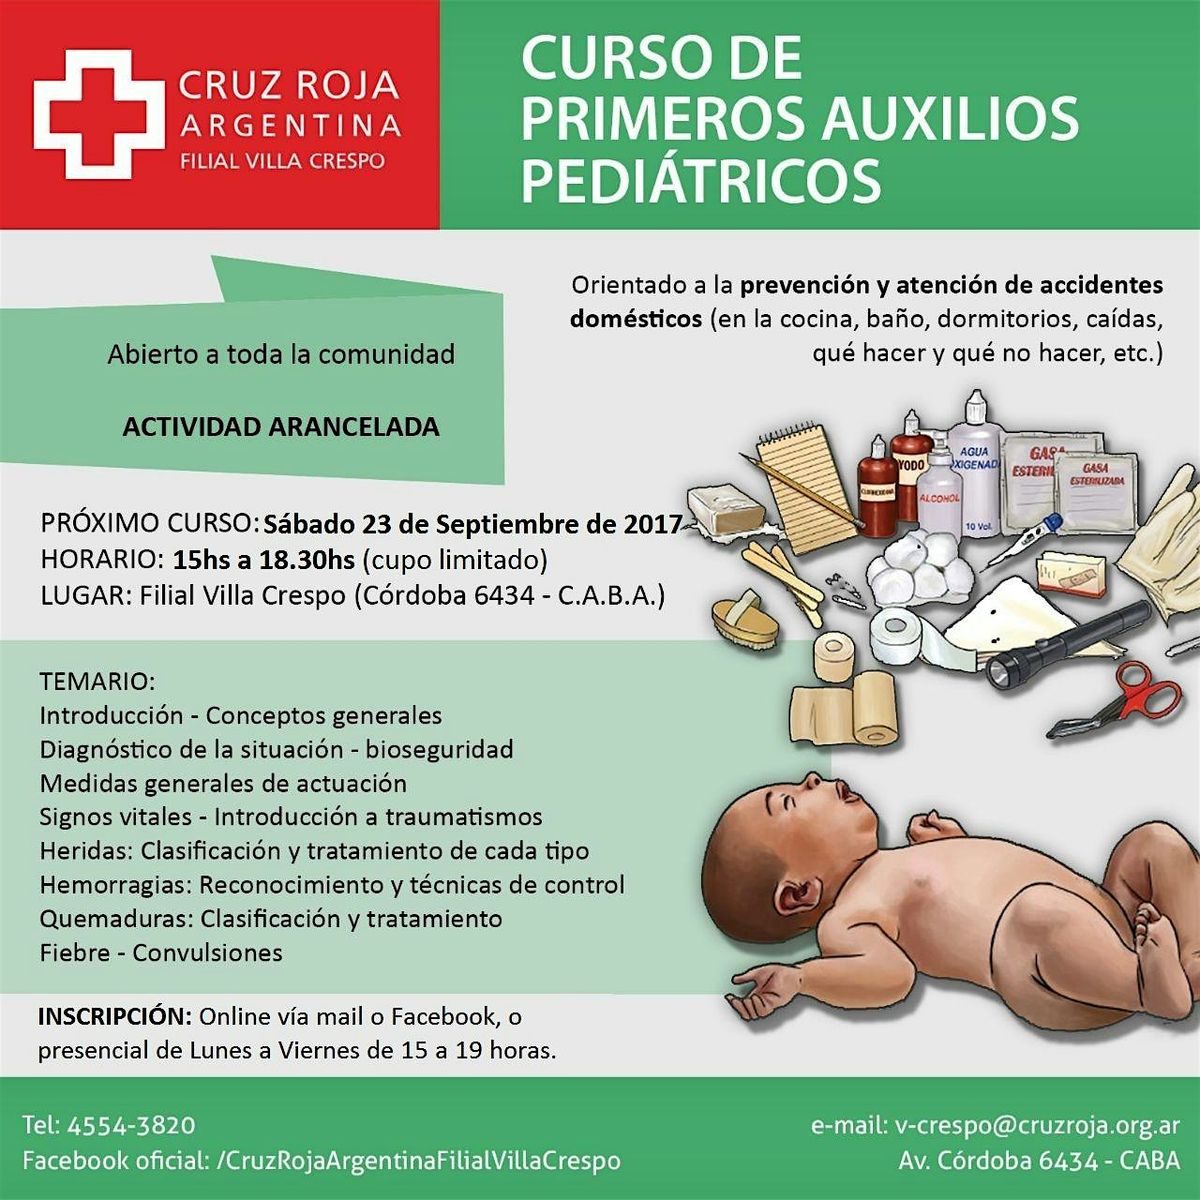 Curso de RCP en Cruz Roja (lunes 13-05-24) 18 a 22 hs - Duraci\u00f3n 4 hs.